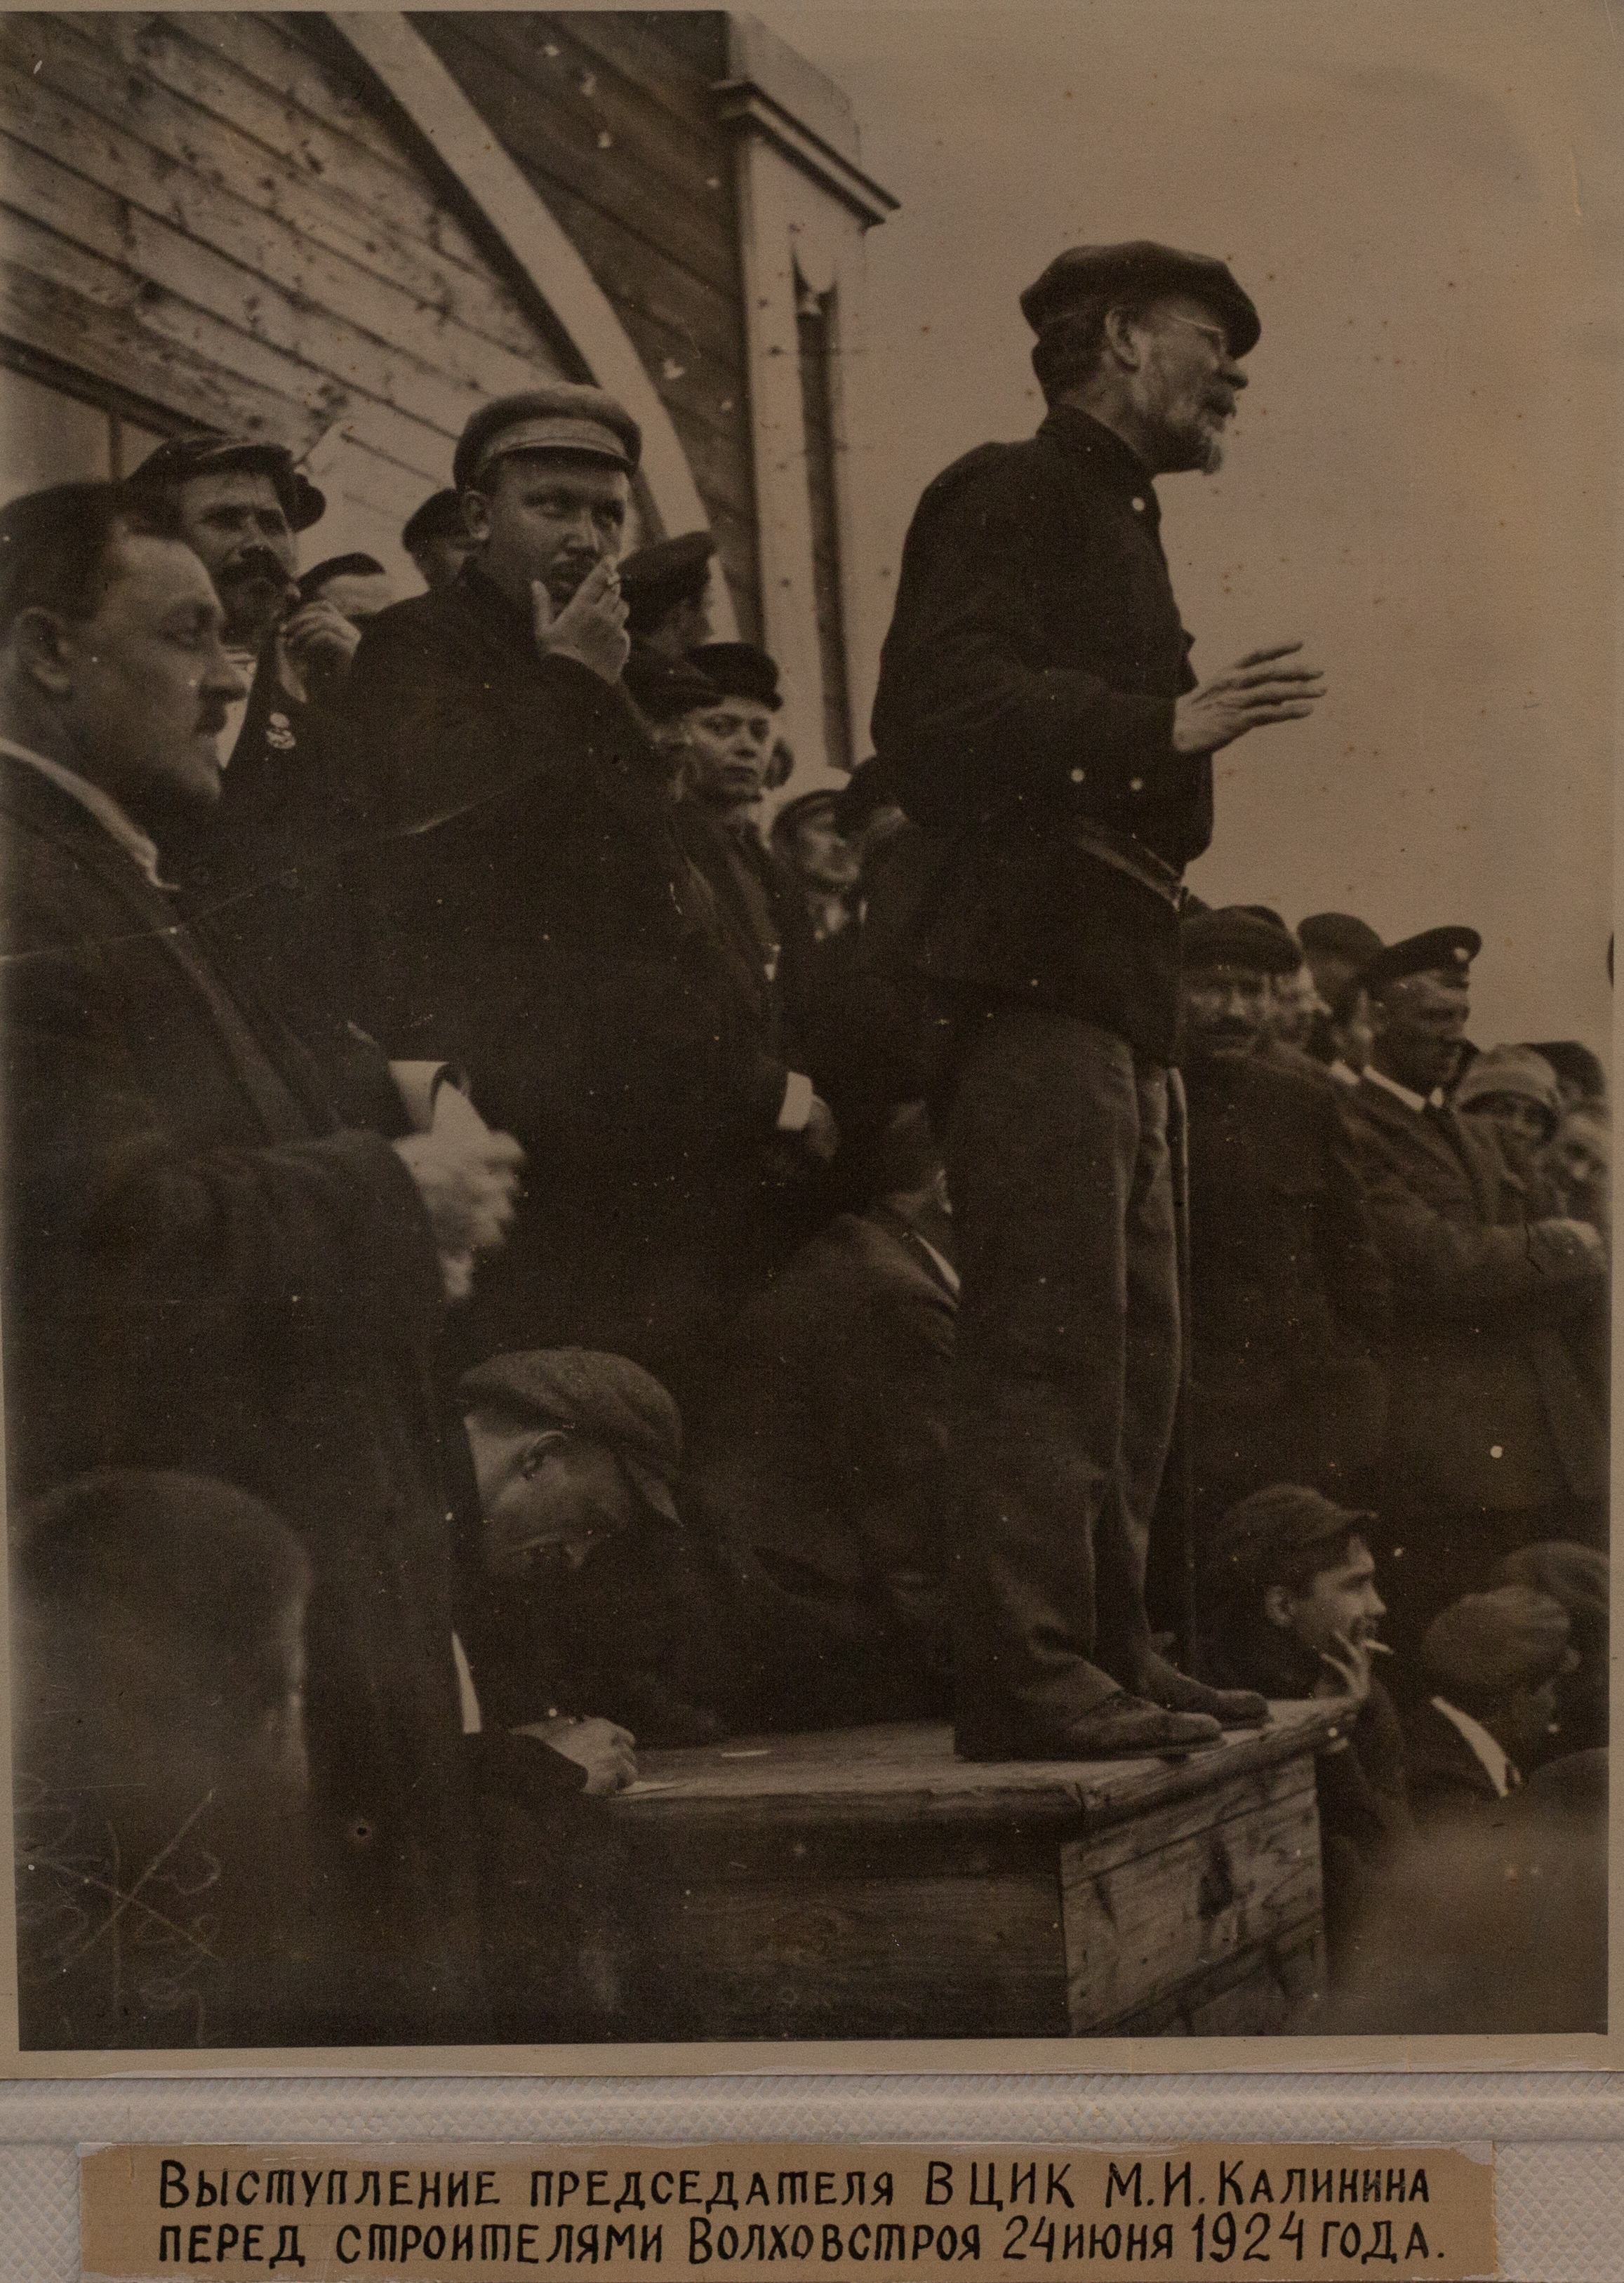 Выступление председателя ВЦИК Калинина М. И. перед строителями Волховстроя (24 июня 1924 г.)